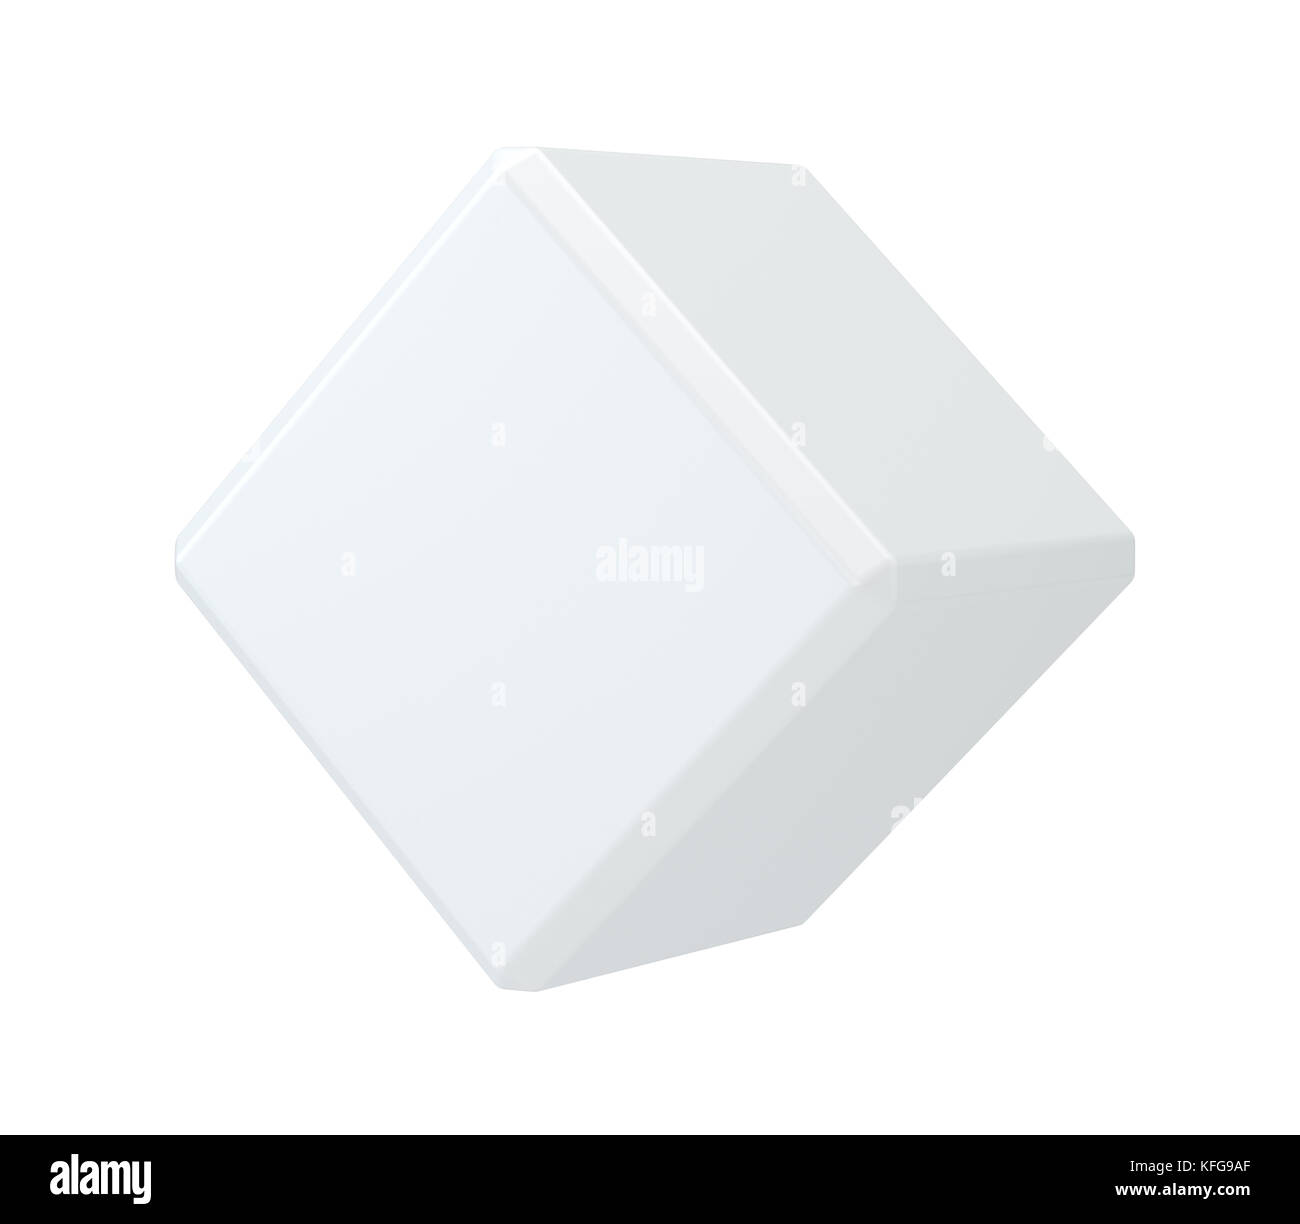 White isolated cube on background sudio Stock Photo